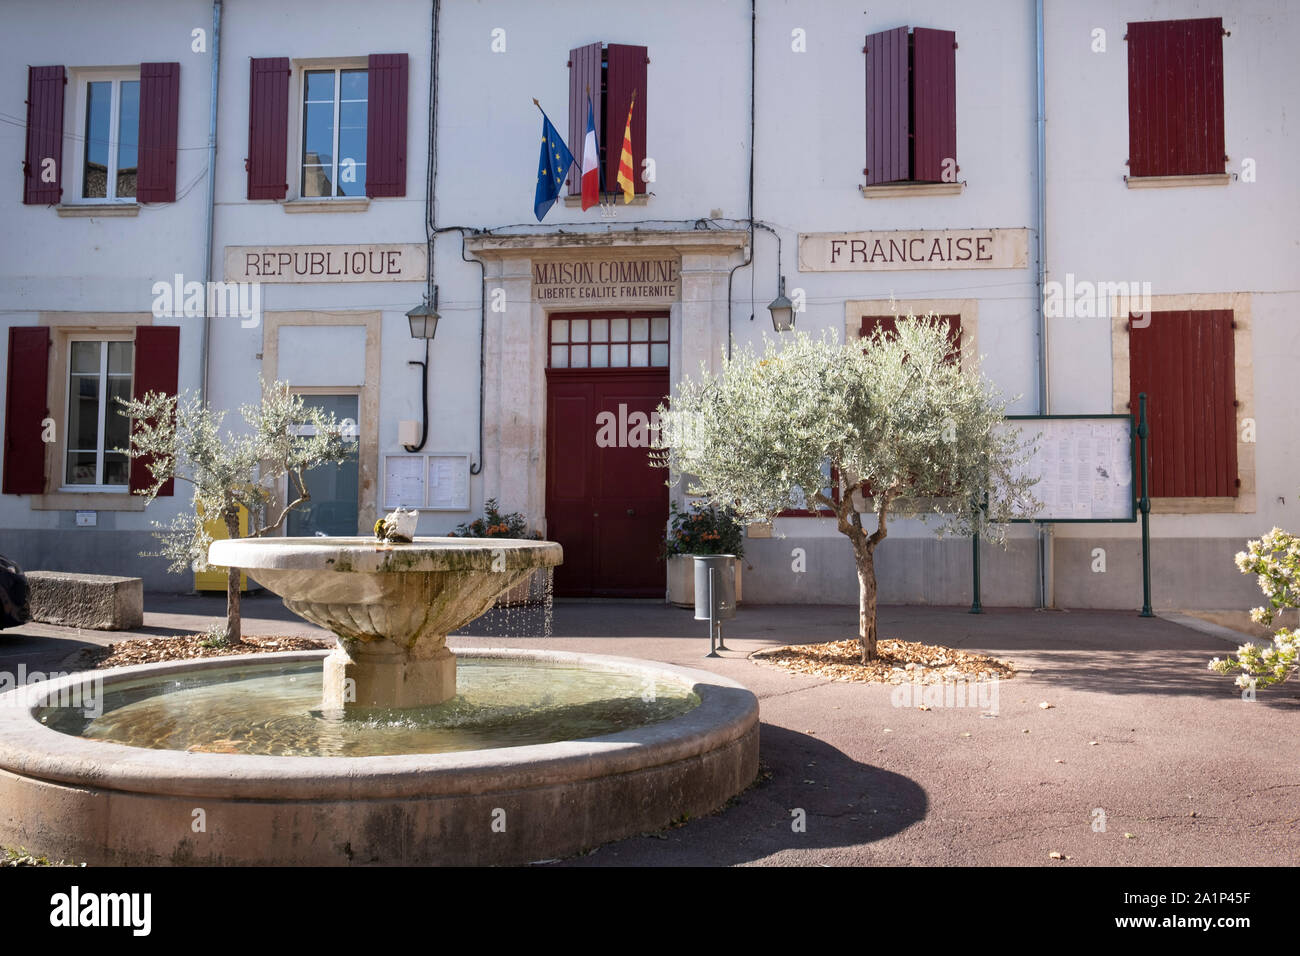 Villes sur Auzon, Vaucluse, Frankreich - das Rathaus, Civic Center und Sitz der Bürgermeister mit der für die Provence typischen Architektur und einer der vielen Stockfoto